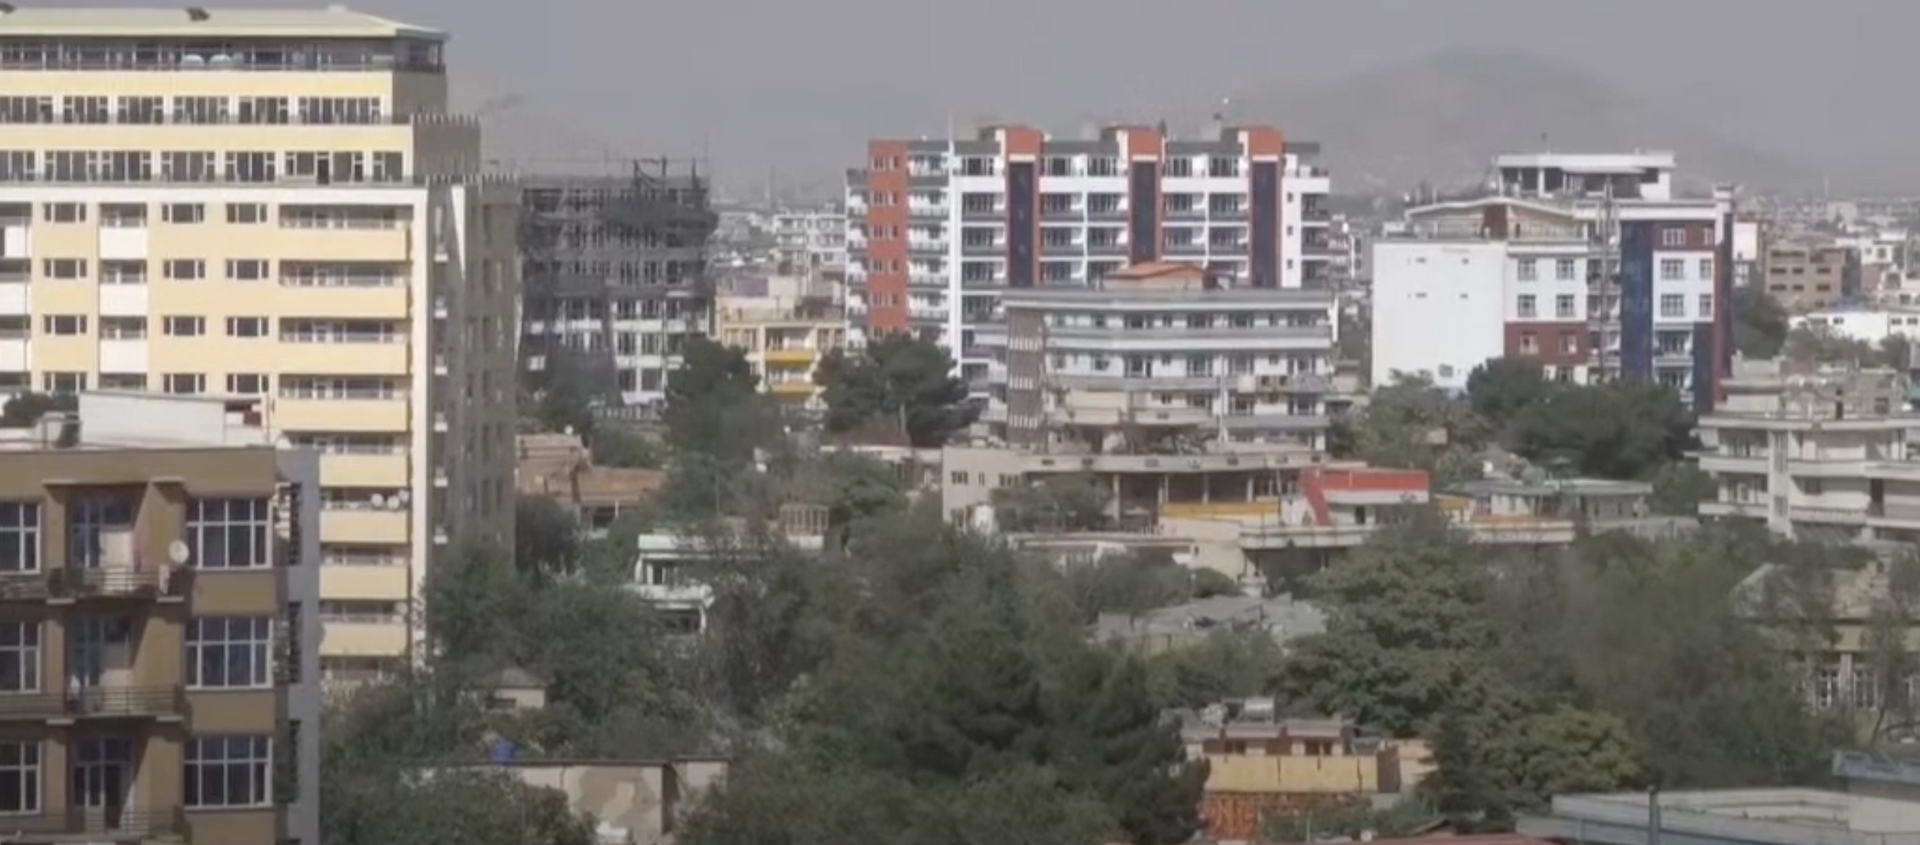 Талибы* вошли в Кабул: как выглядит столица Афганистана после захвата - видео - Sputnik Грузия, 1920, 17.08.2021